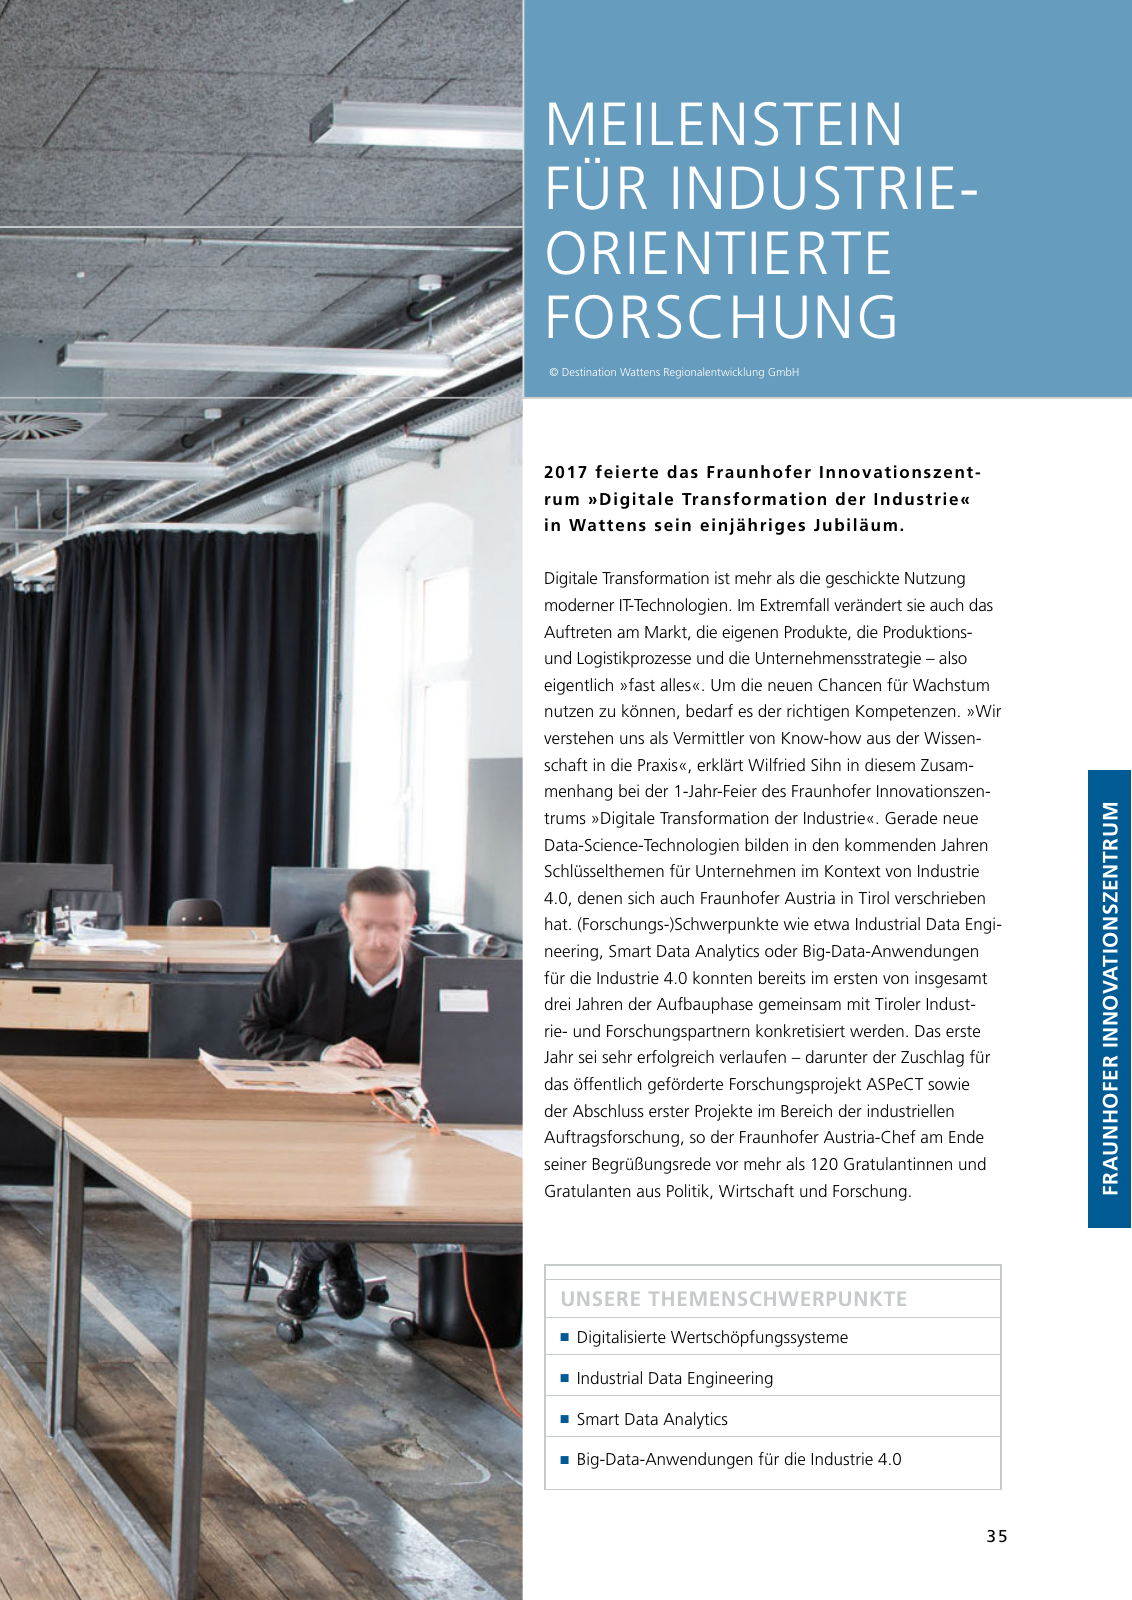 Vorschau Jahresbericht 2017 - Fraunhofer Austria Geschäftsbereich Produktions- und Logistikmanagment Seite 35